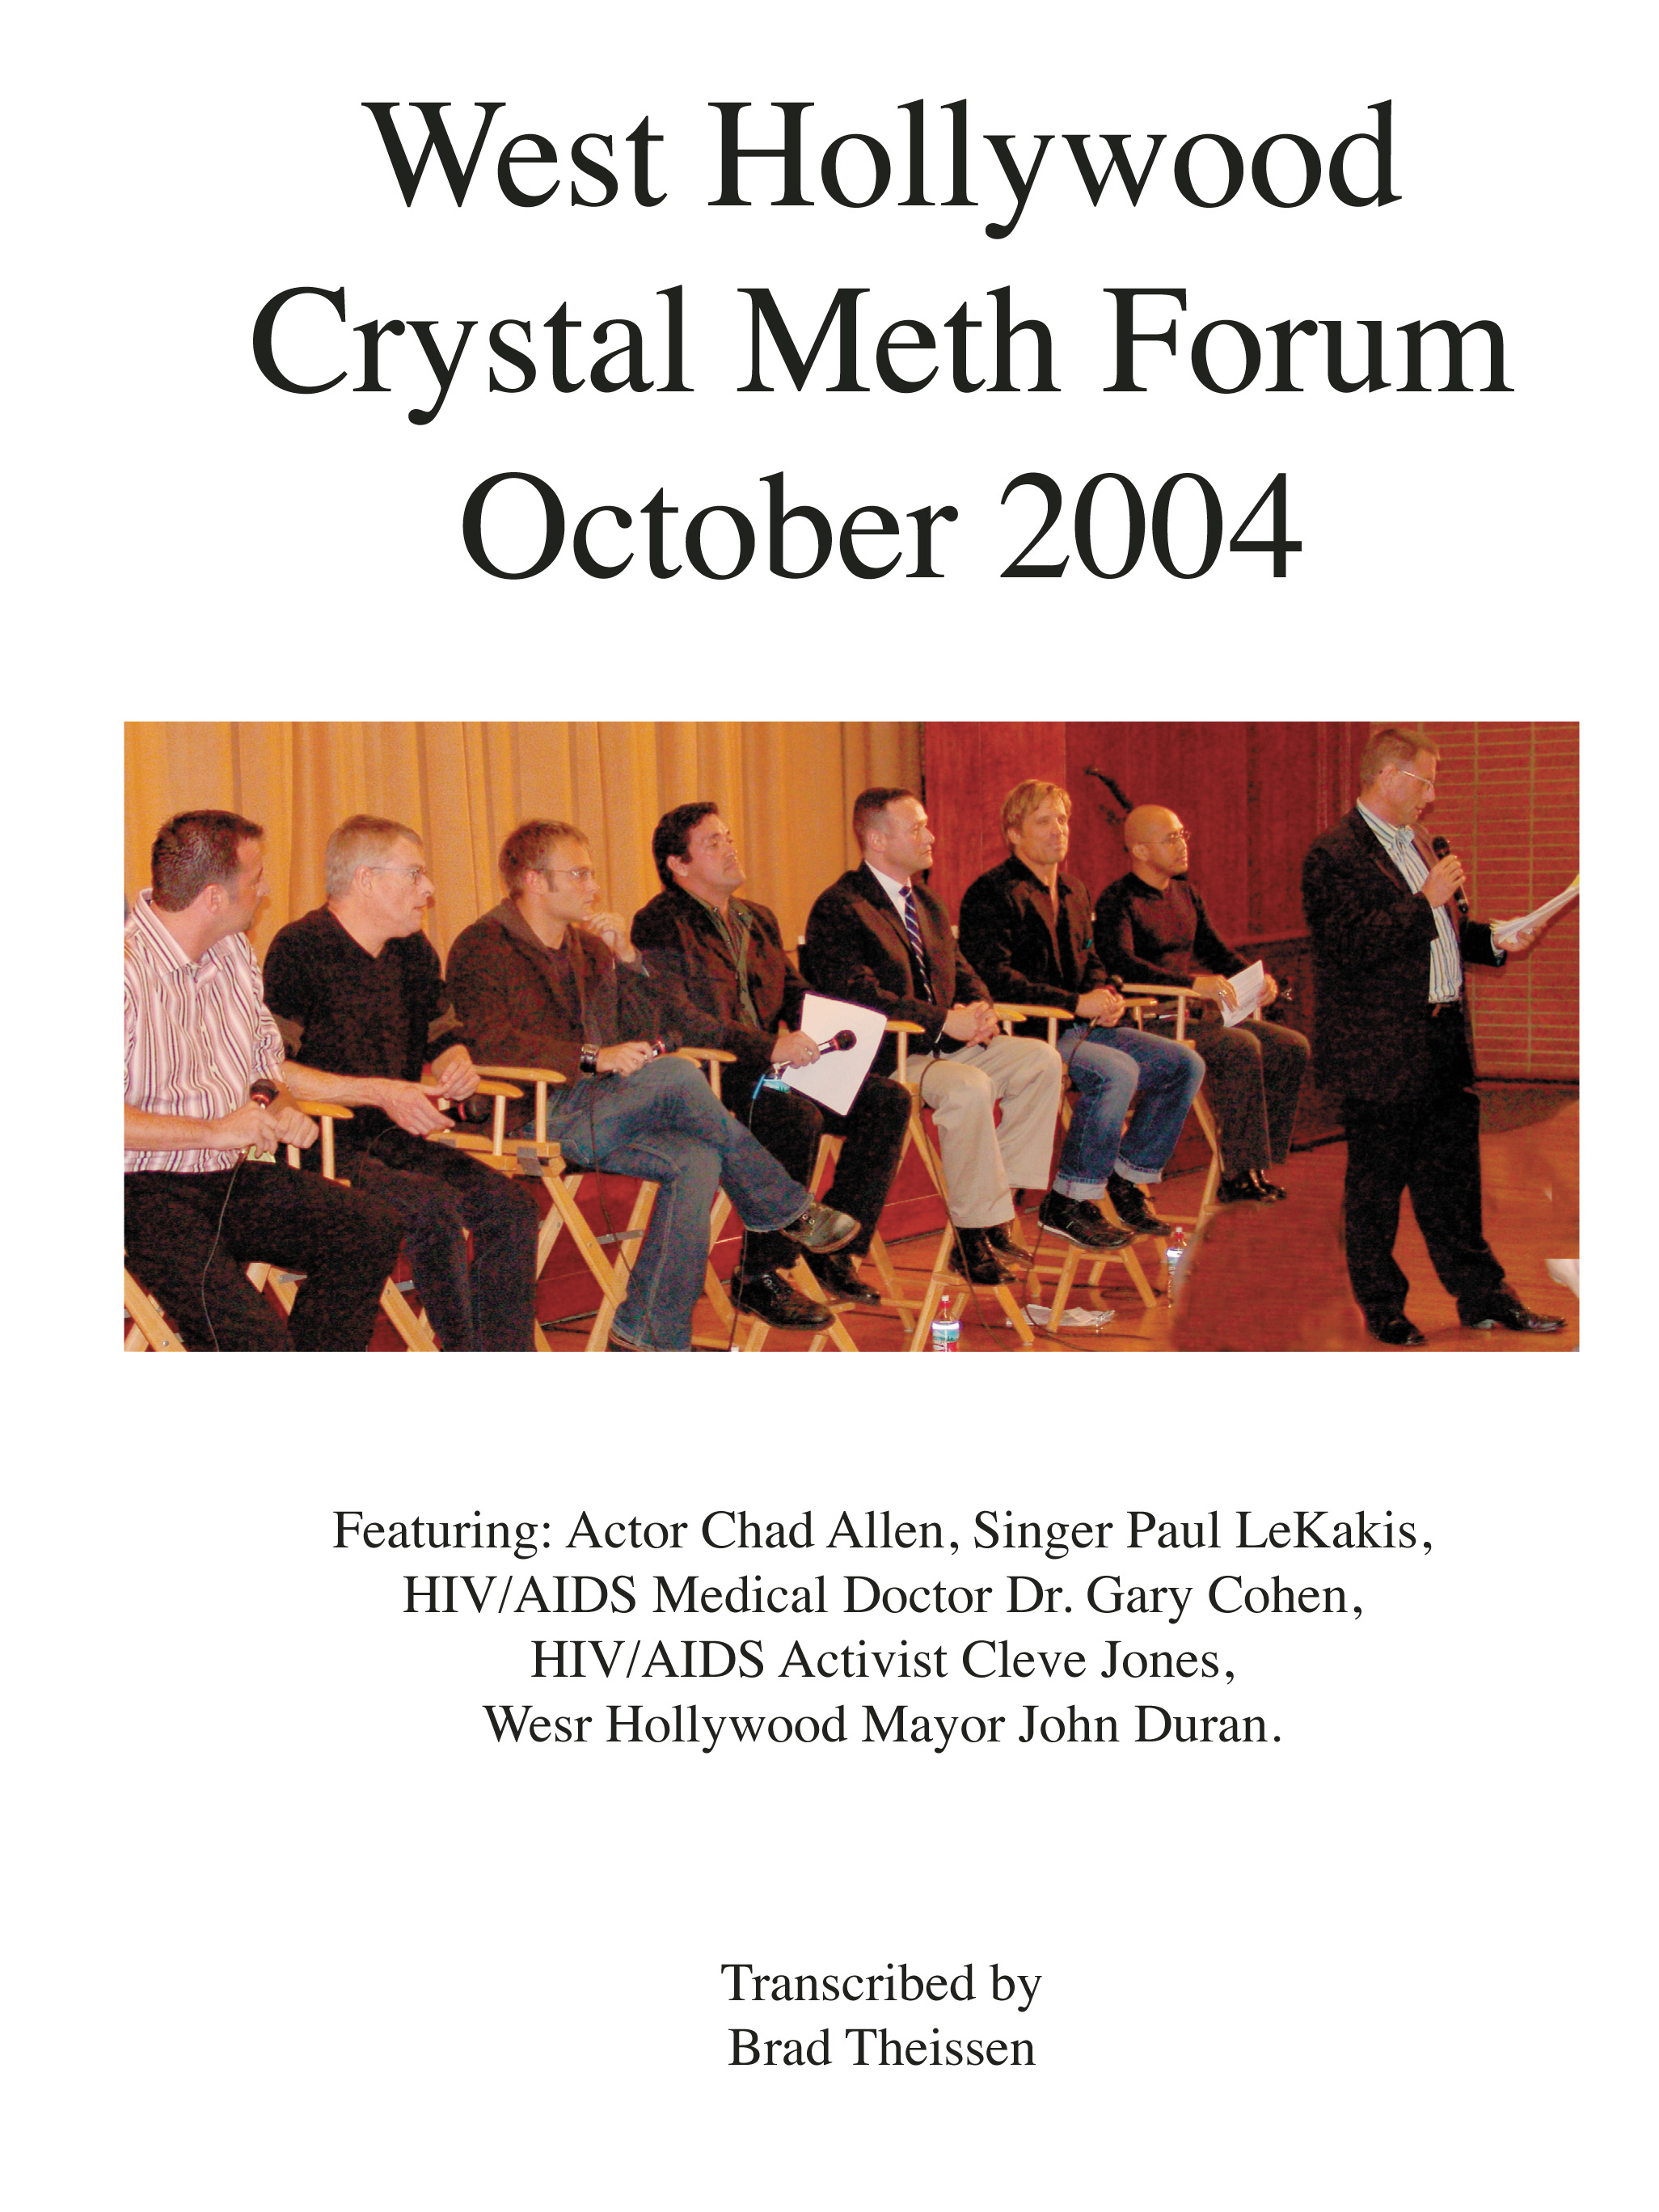 West Hollywood Crystal Meth Forum 2004 (8x10)